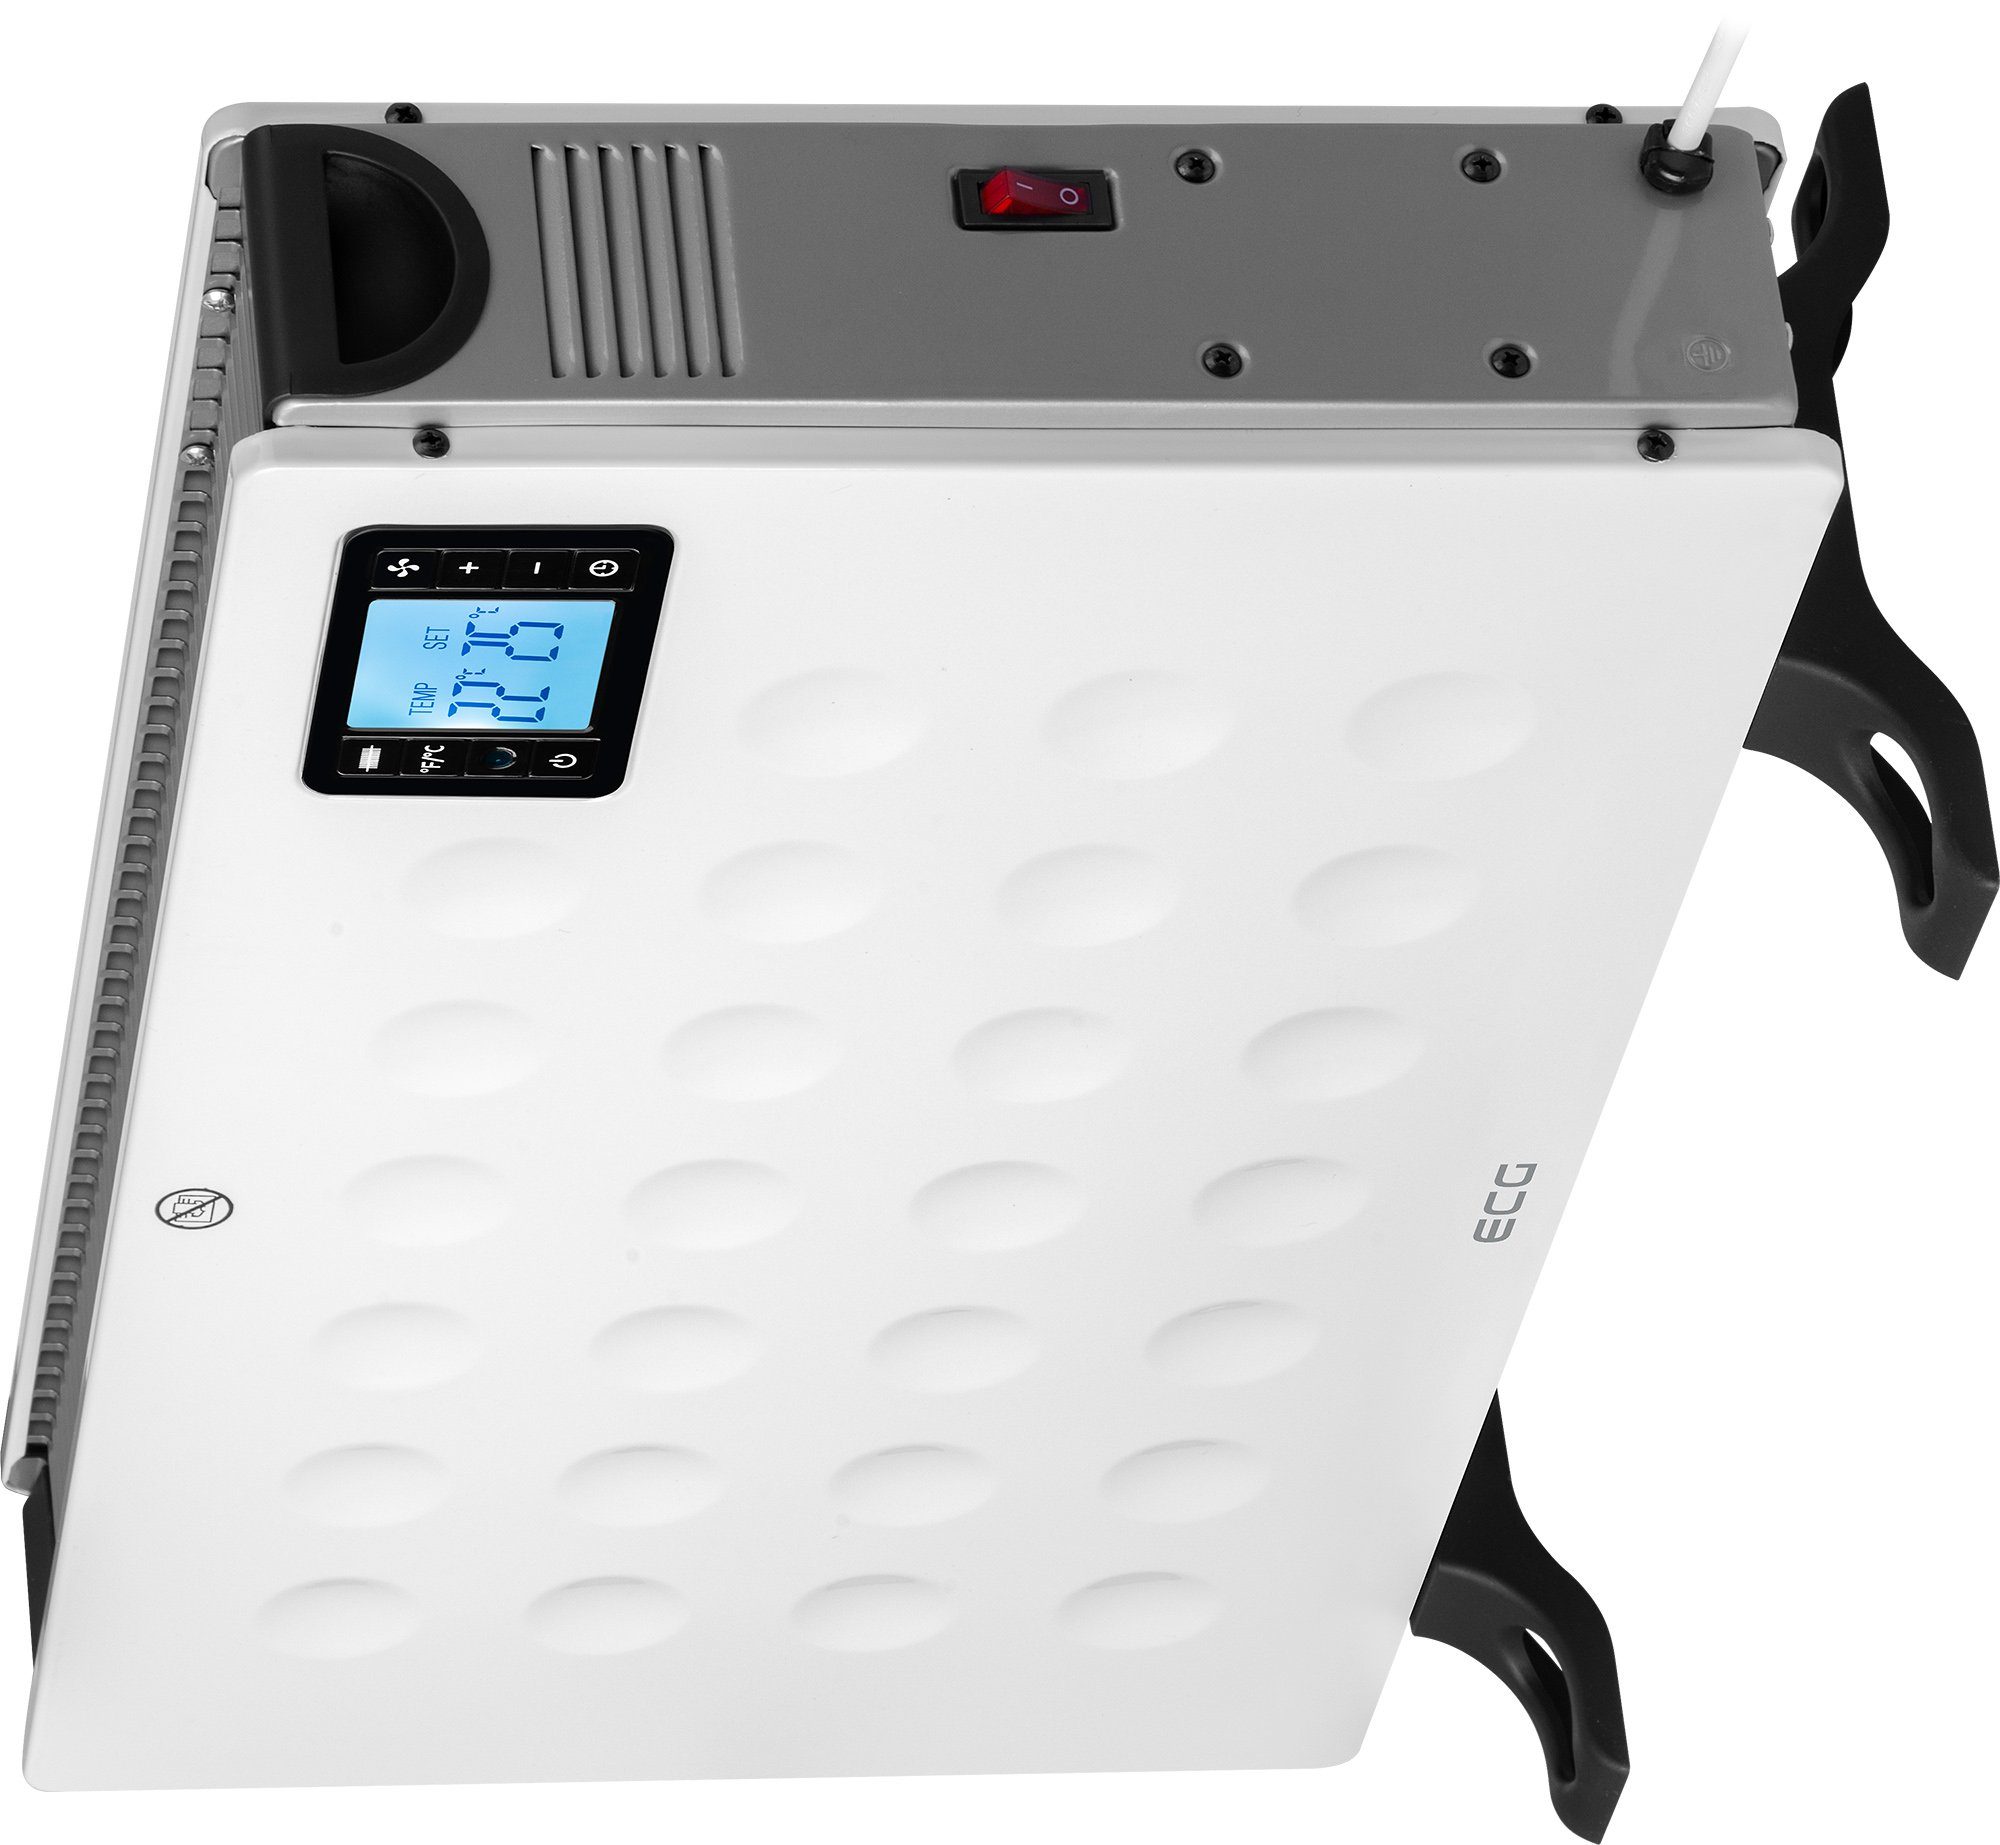 Thermostat, Ventilator White, 2080 Stufenlos Eingebauter TK regulierbarer W, ECG DR 2000 Konvektor